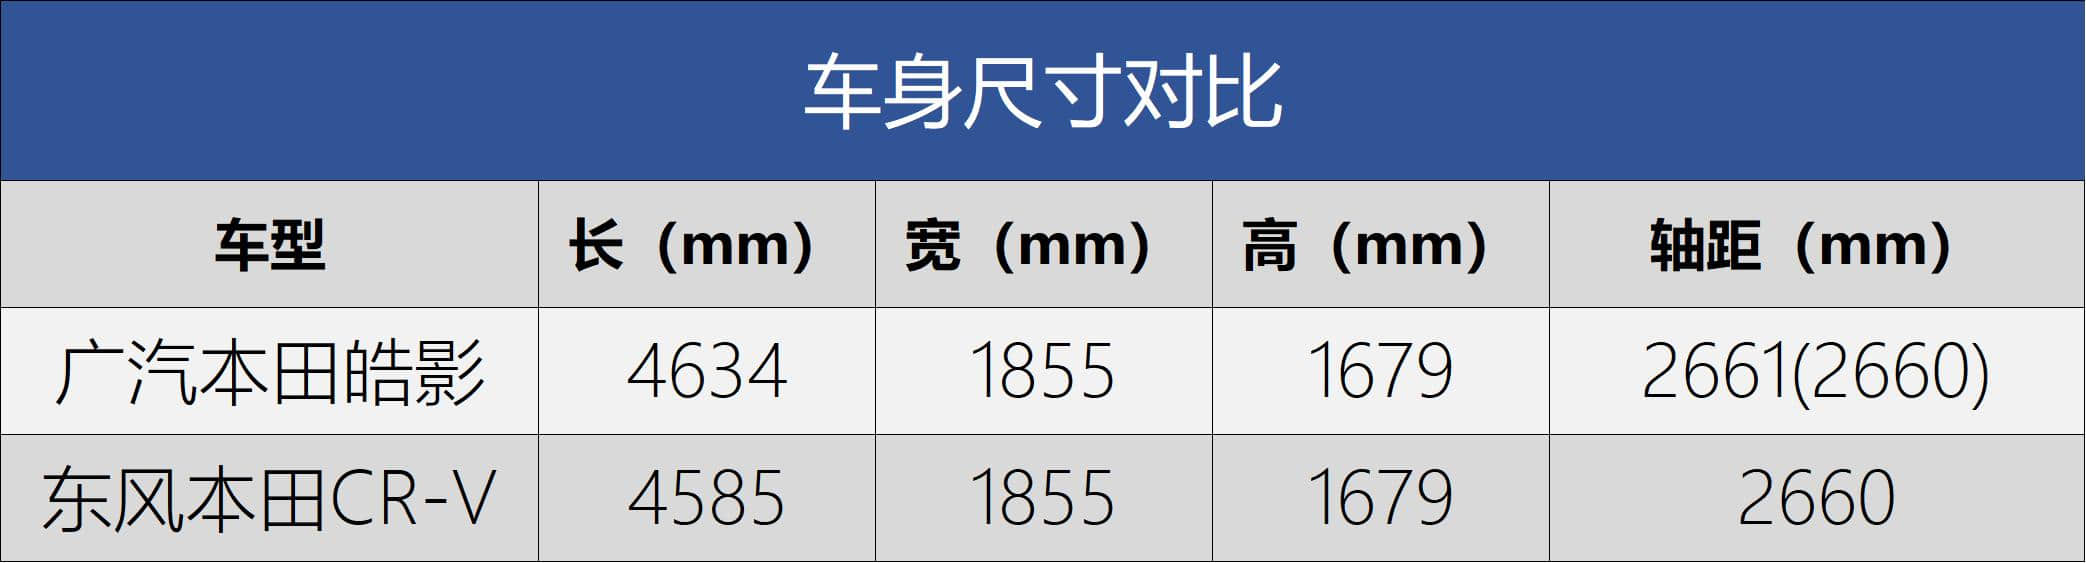 广汽本田全新车型定名“皓影”定位于紧凑型SUV